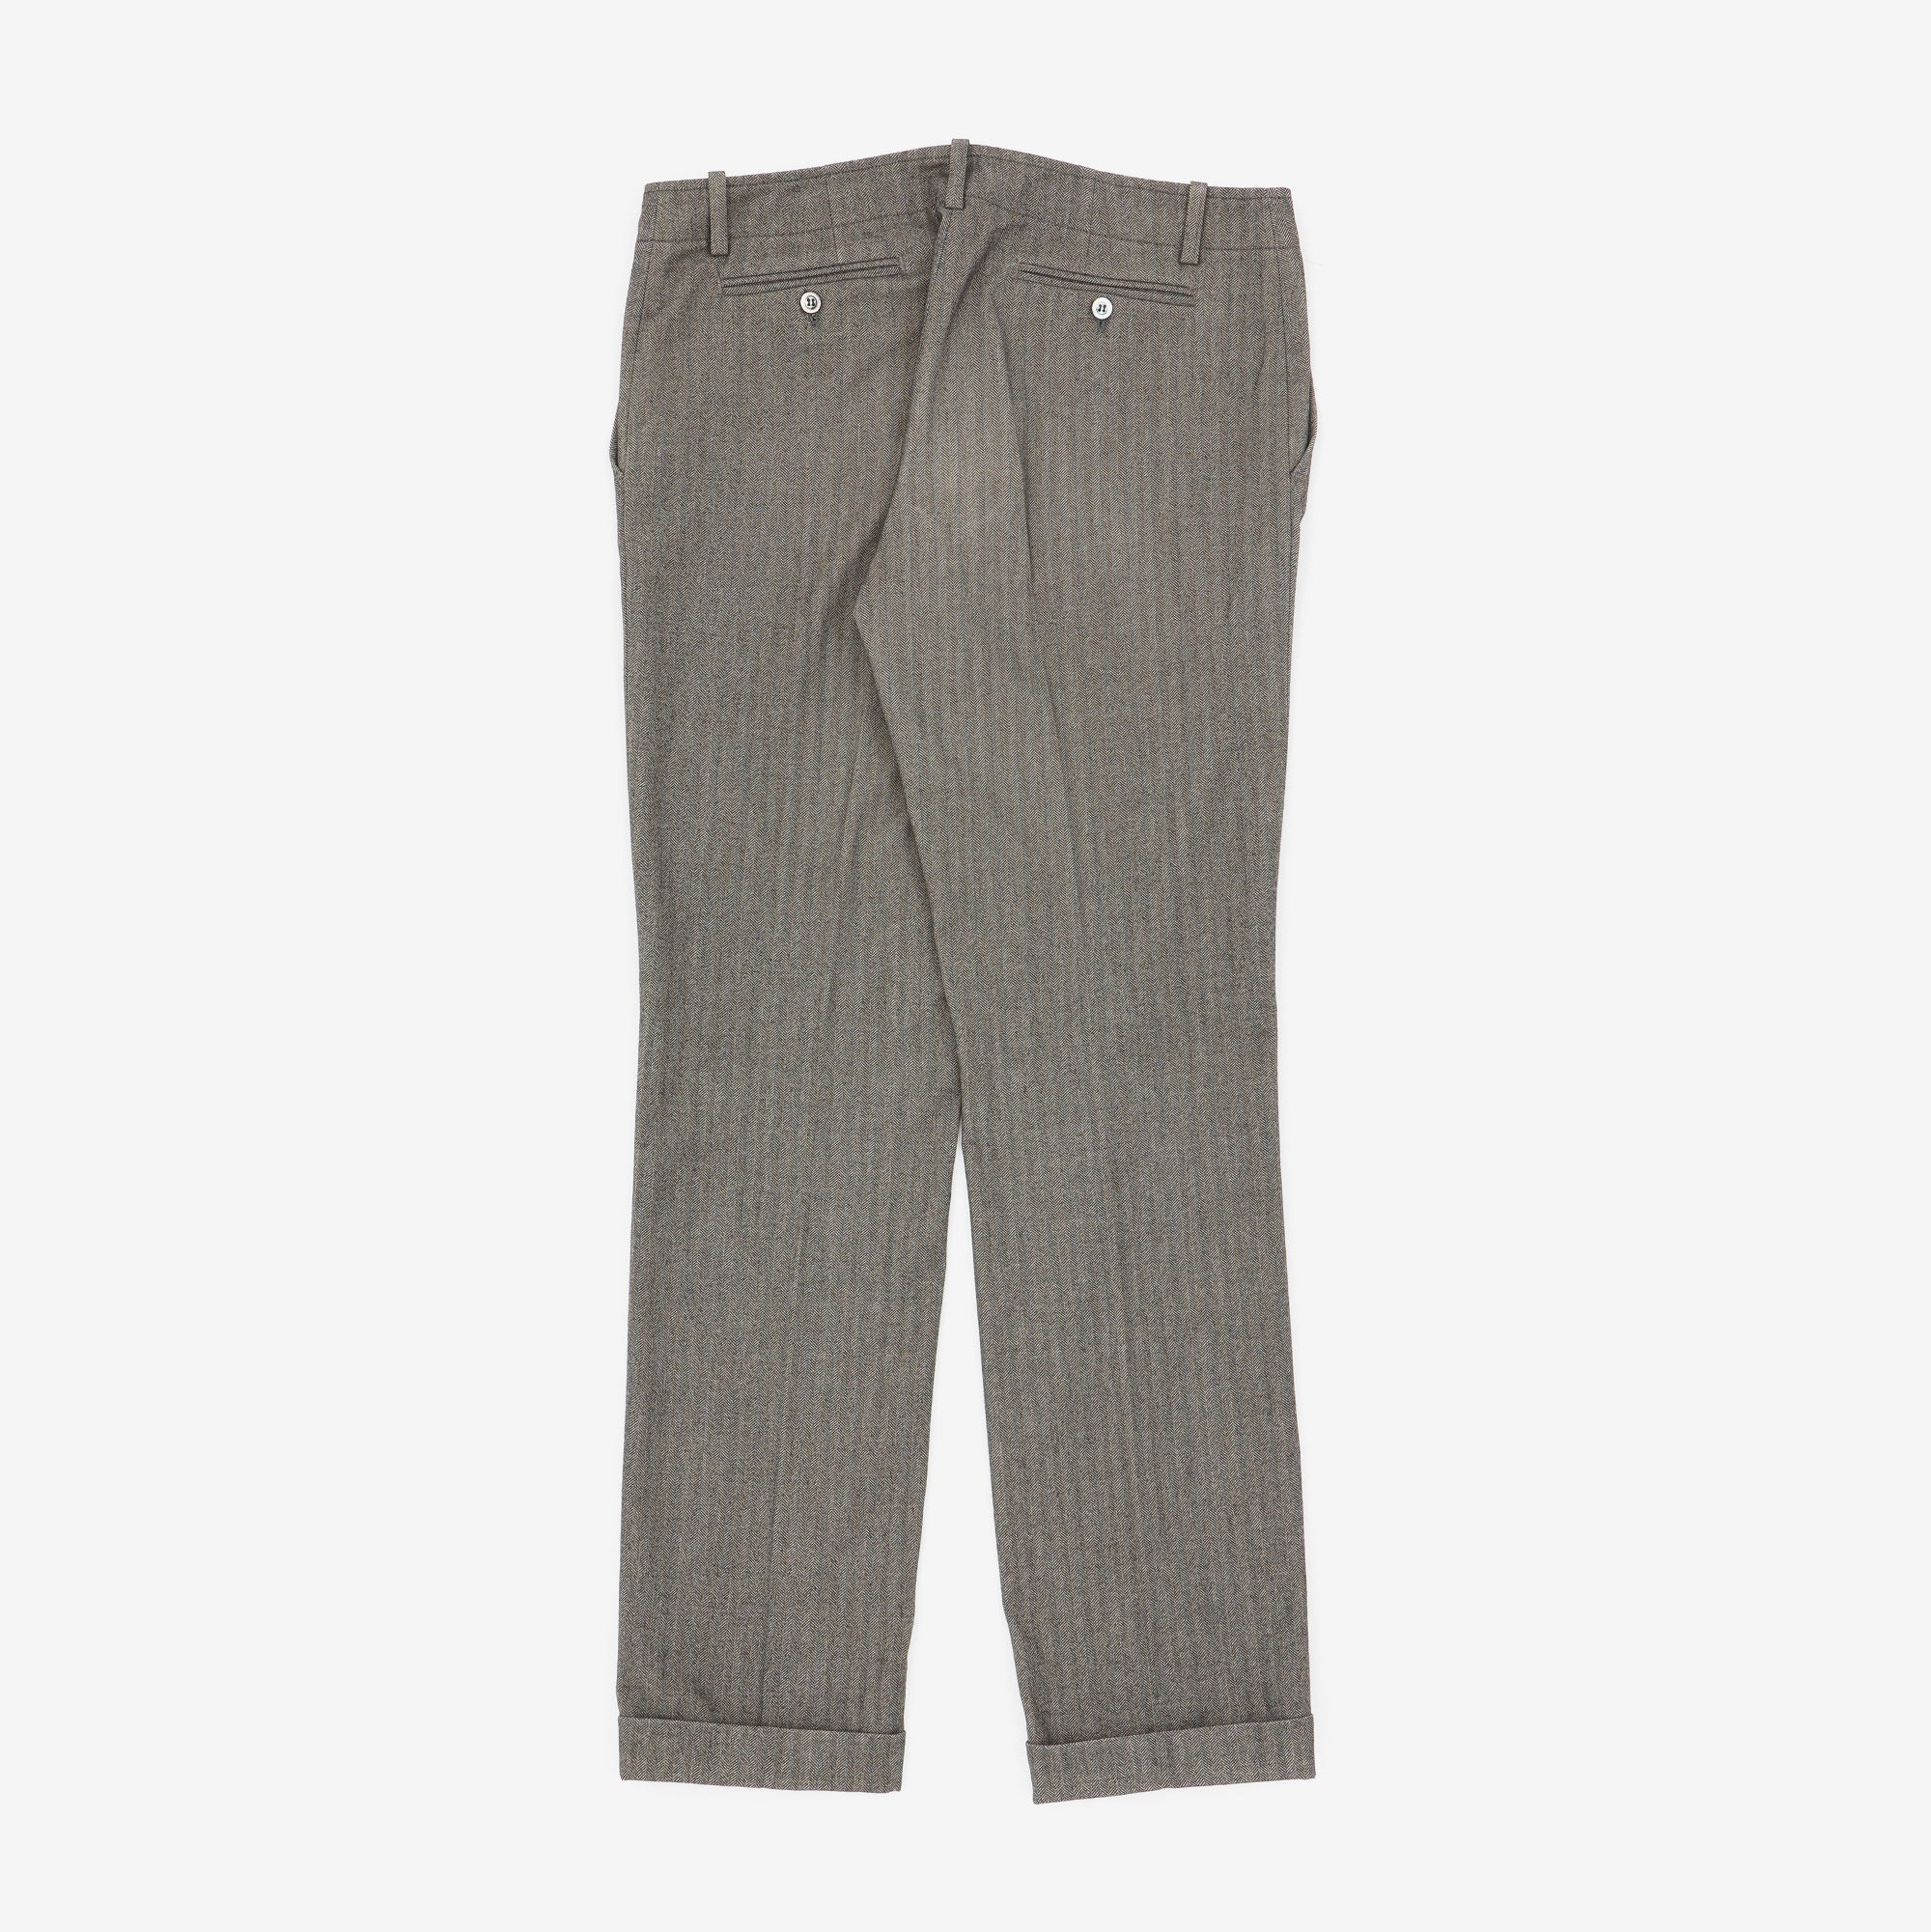 Herringbone Trousers (34 x 32)